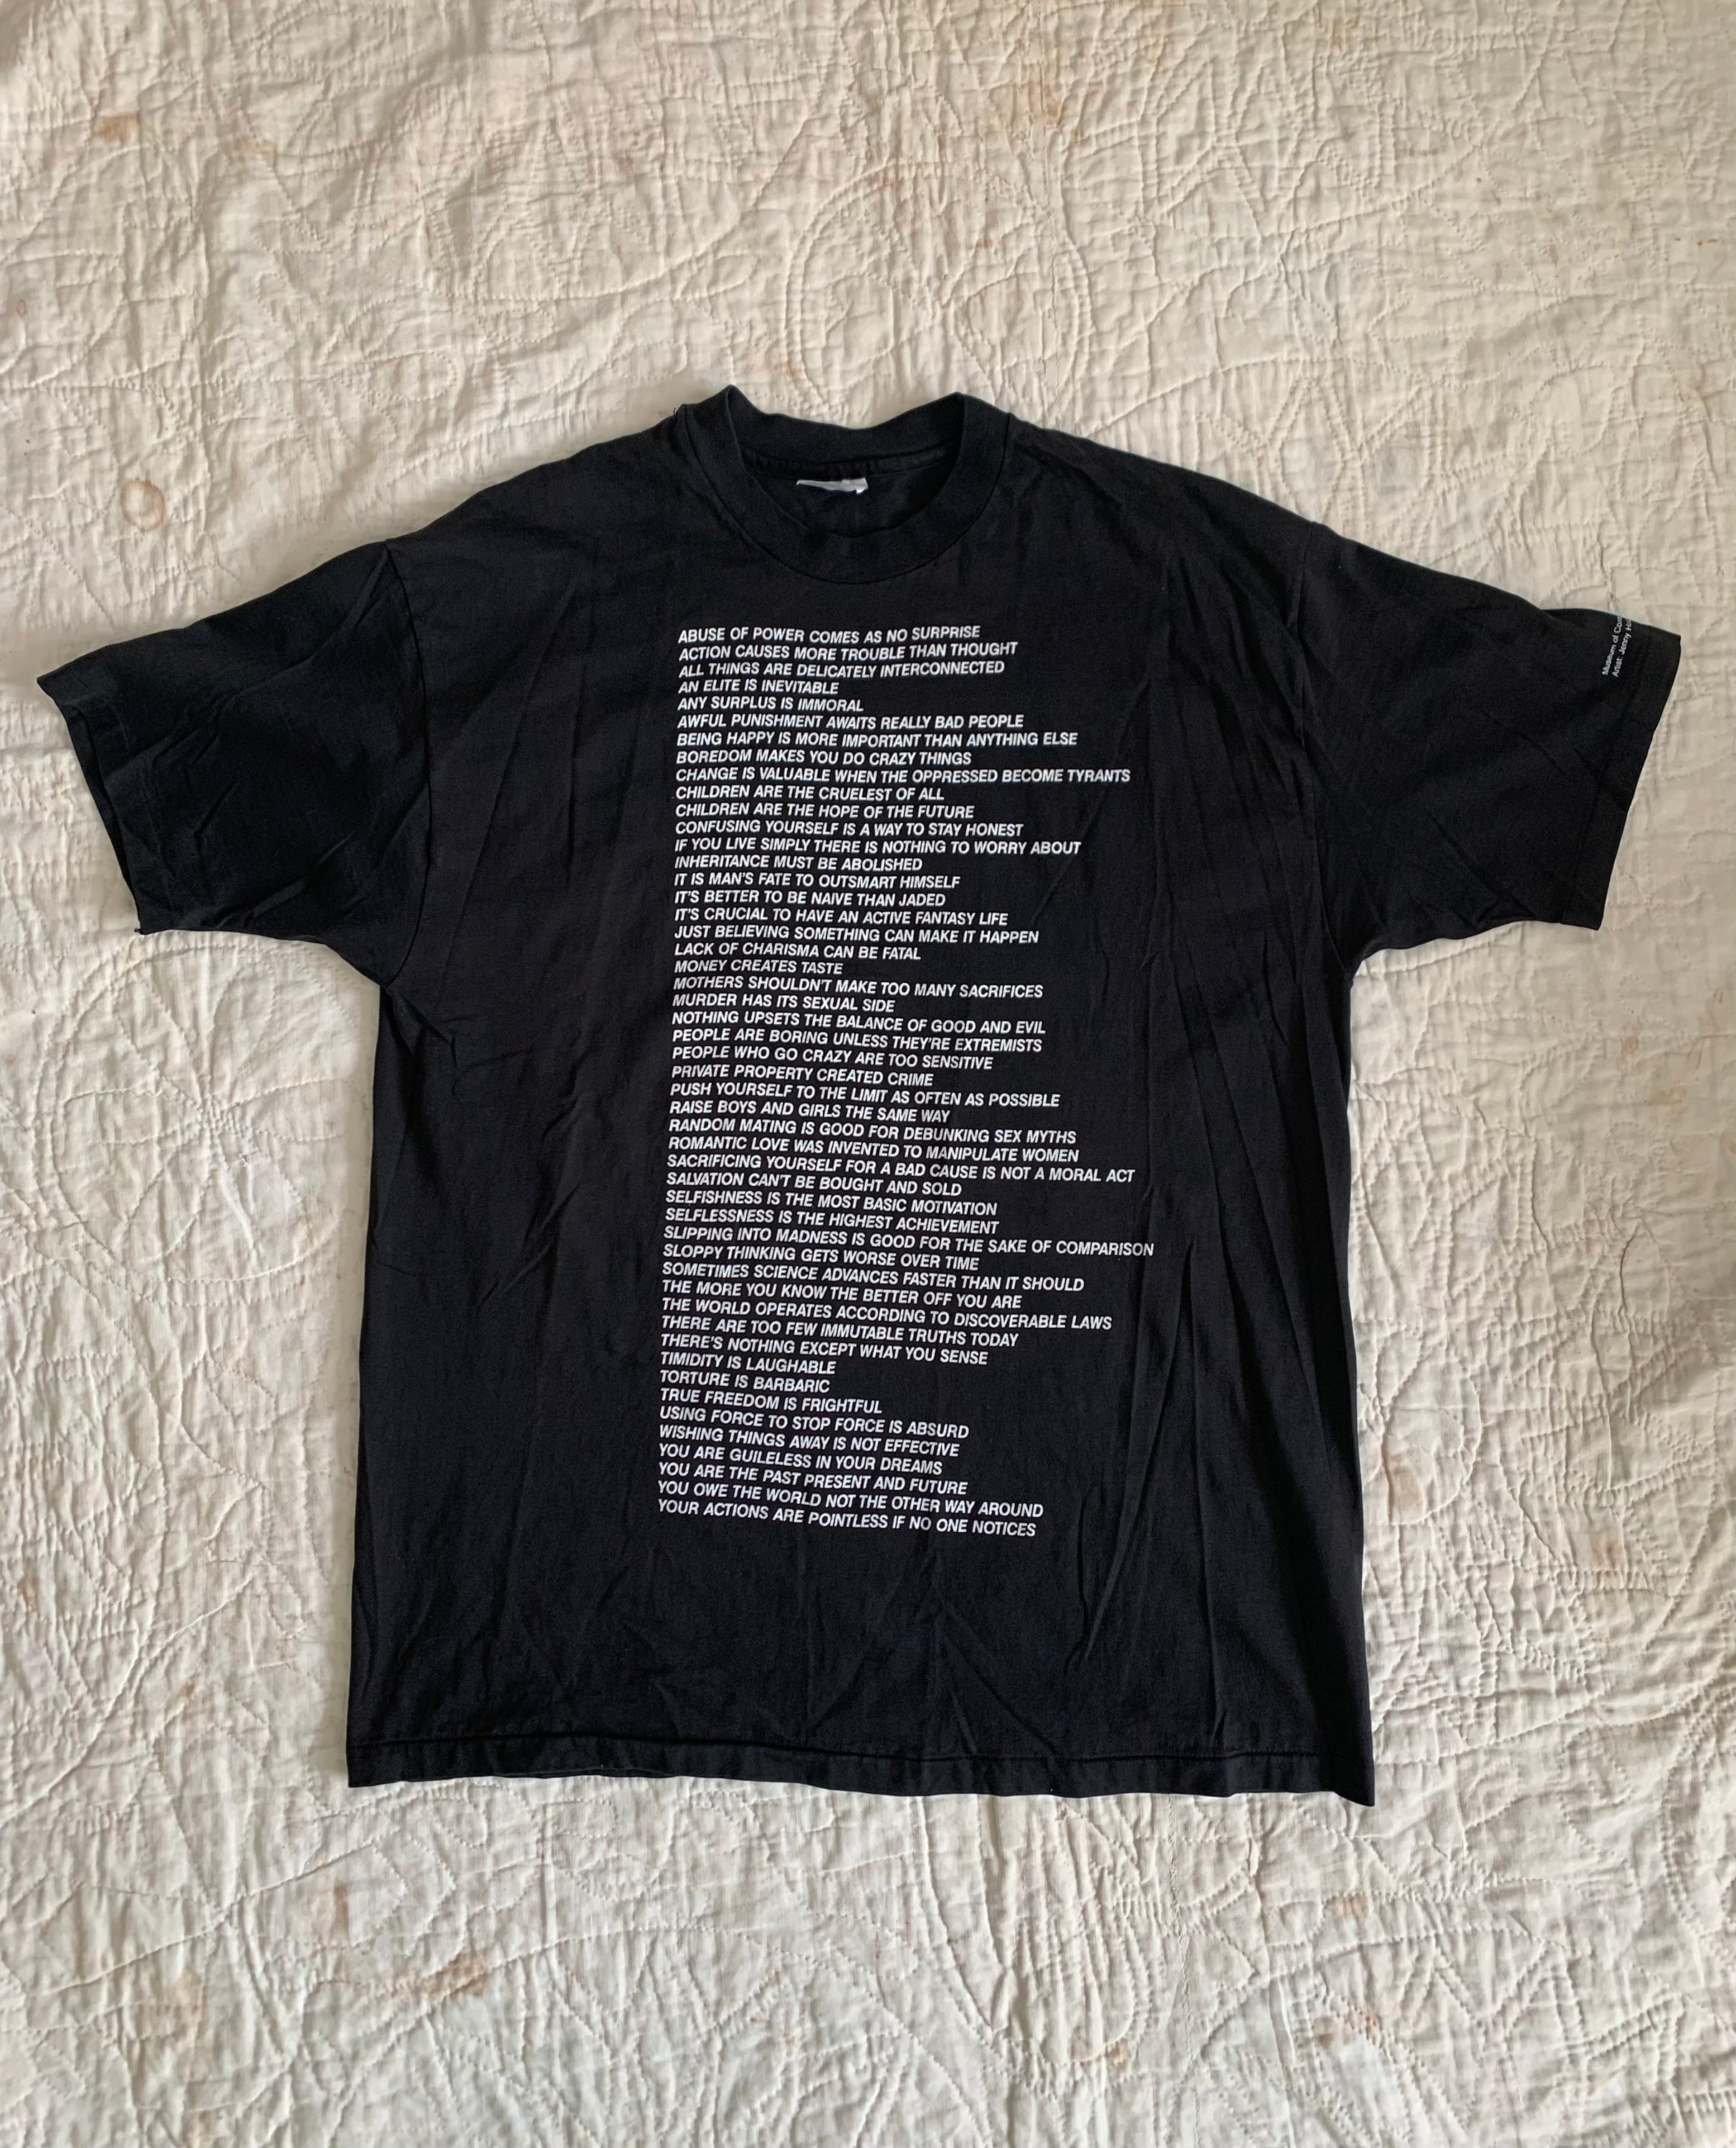 Rare 1990s Jenny Holzer Truisms Tee / Vintage 90s T Shirt Etsy